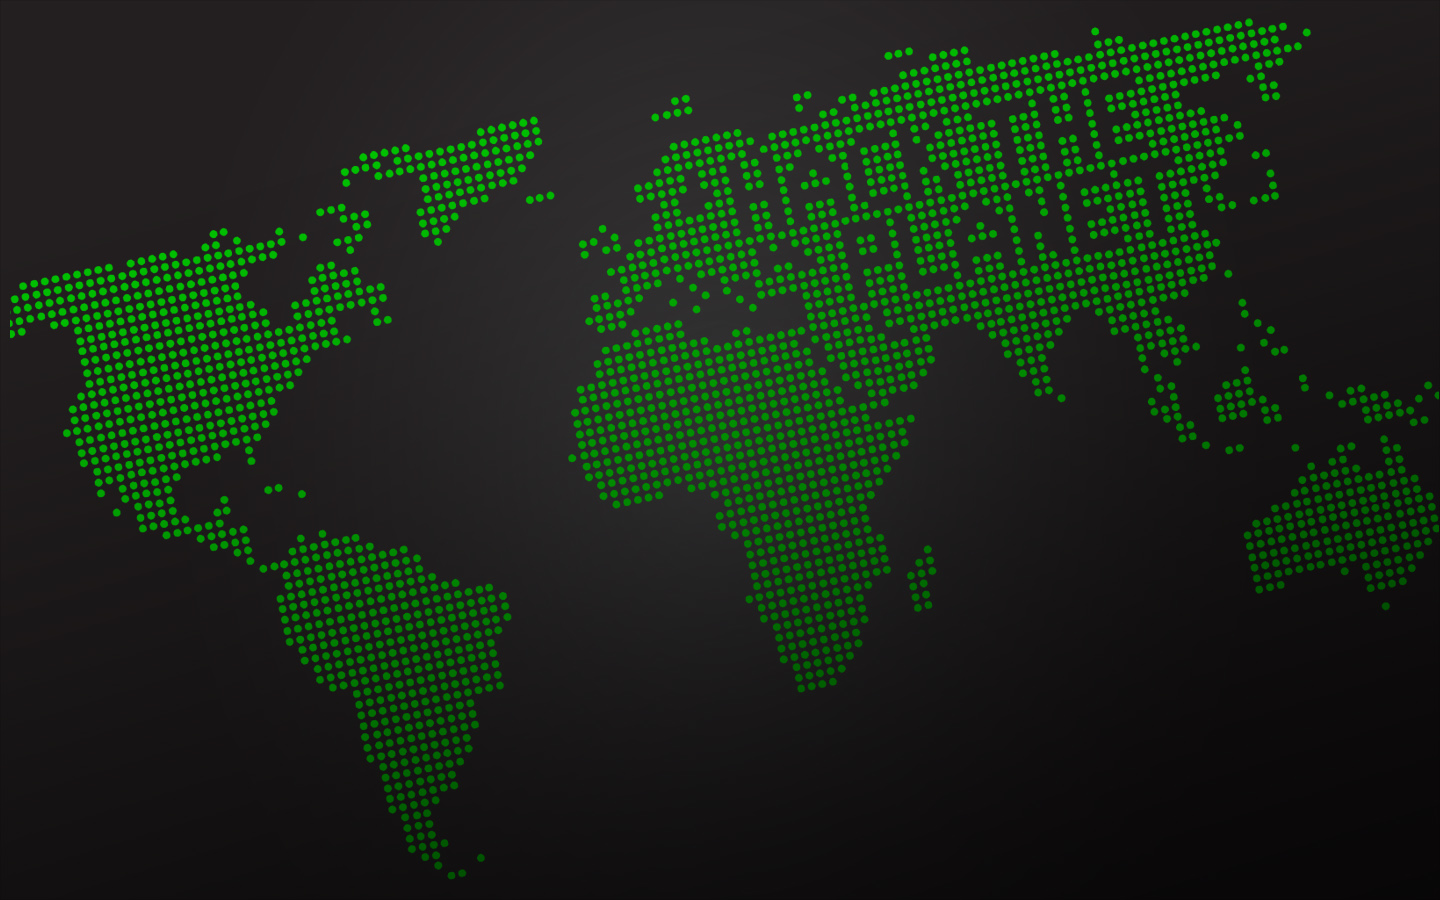 Fond d'écran Hack The Planet - Résolution : 1440*900